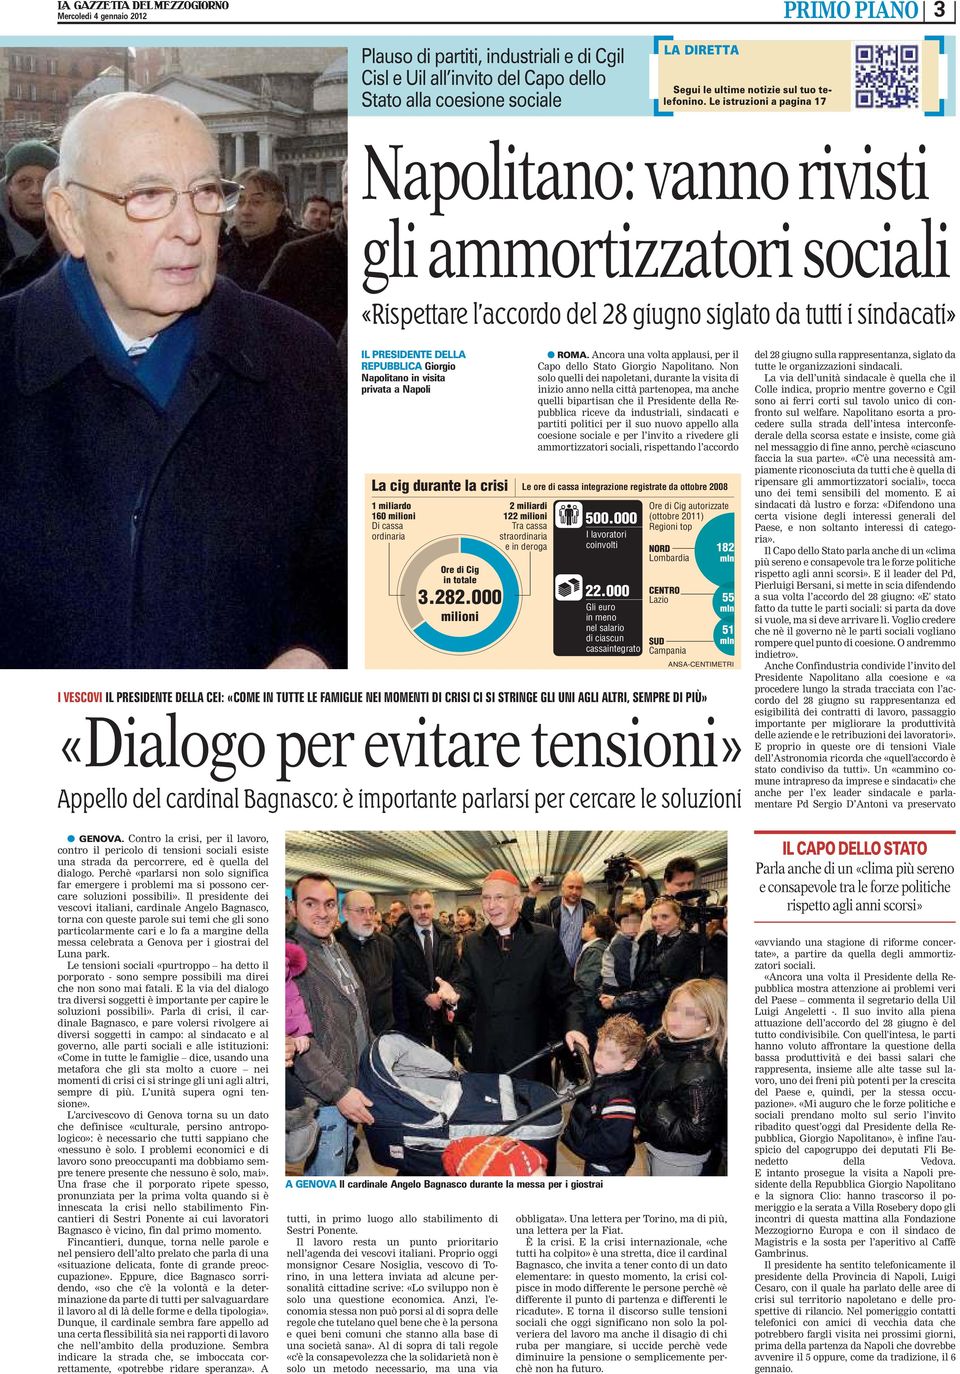 DELLA REPUBBLICA Giorgio Napolitano in visita privata a Napoli La cig durante la crisi 1 miliardo 160 milioni Di cassa ordinaria Ore di Cig in totale 3282000 milioni l ROMA Ancora una volta applausi,